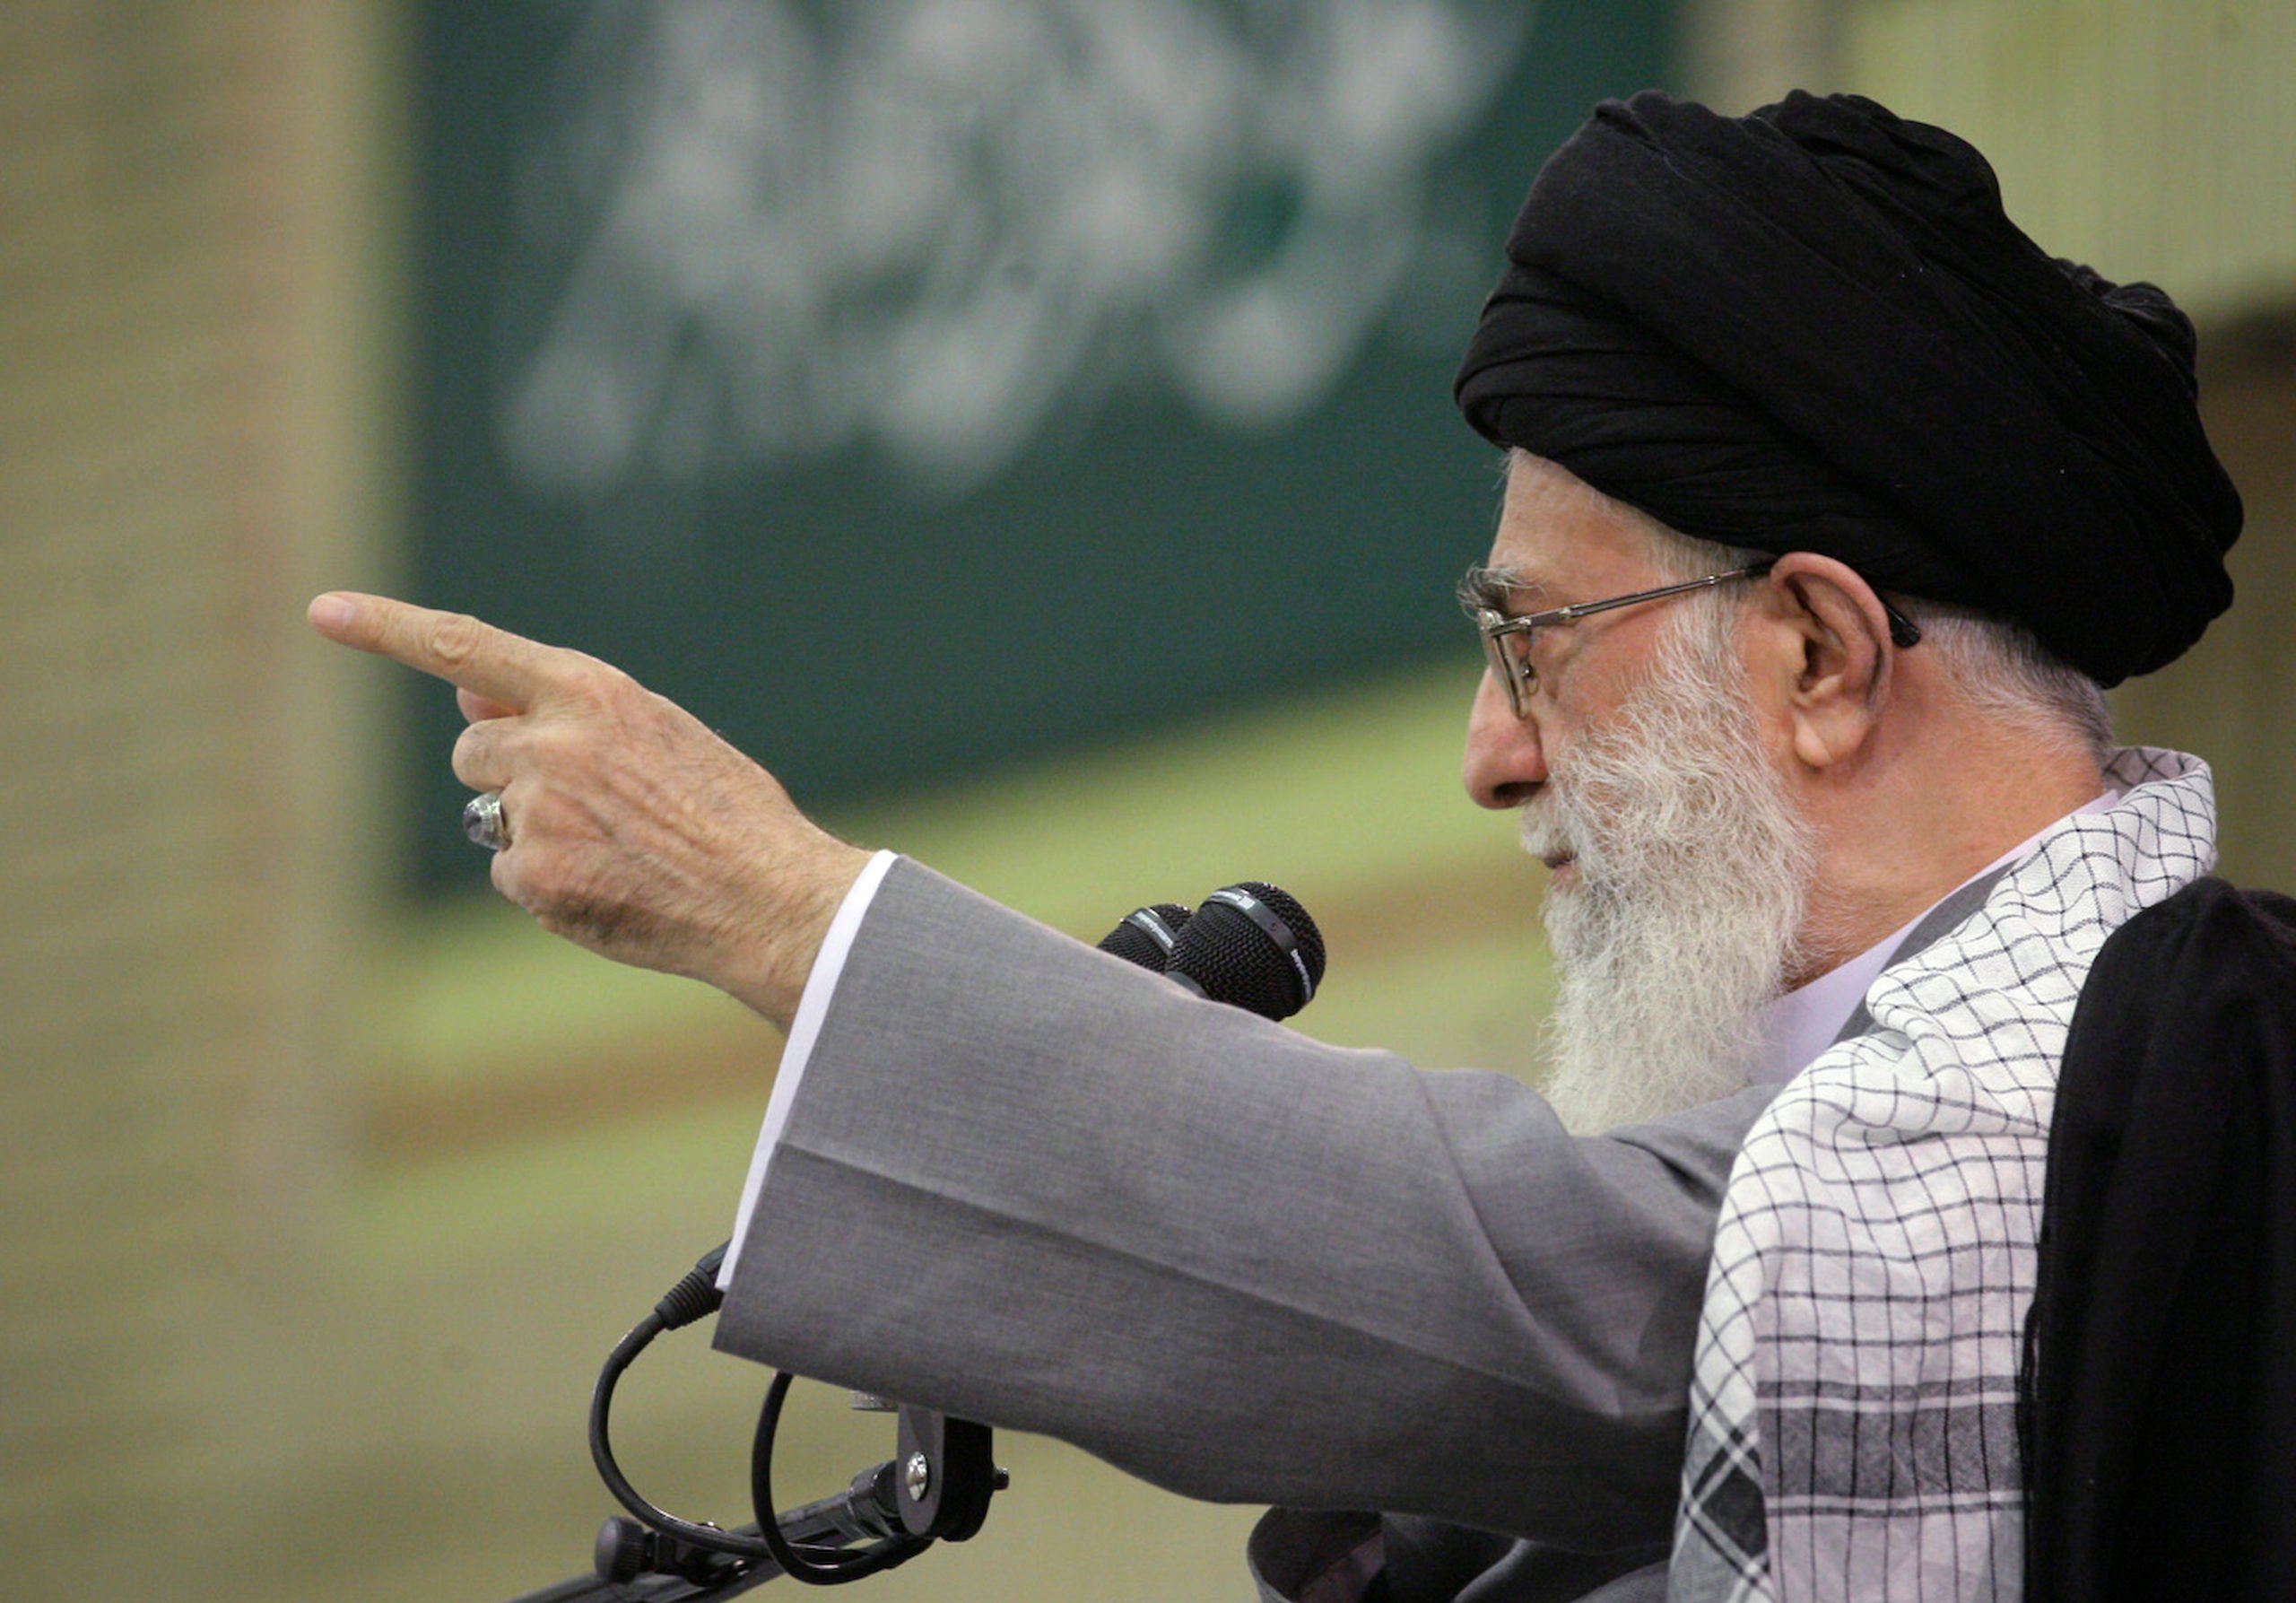 REUTERS/Khamenei.ir